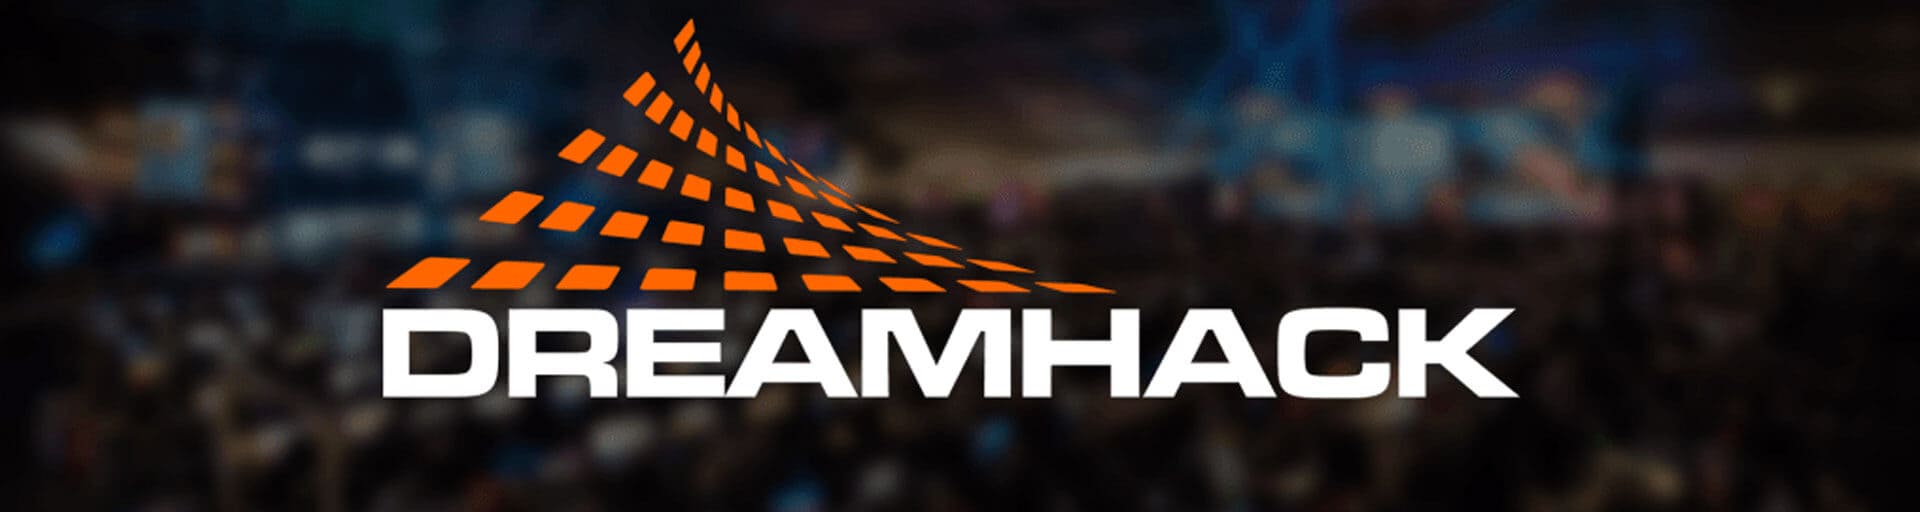 DreamHack Open Summer 2020